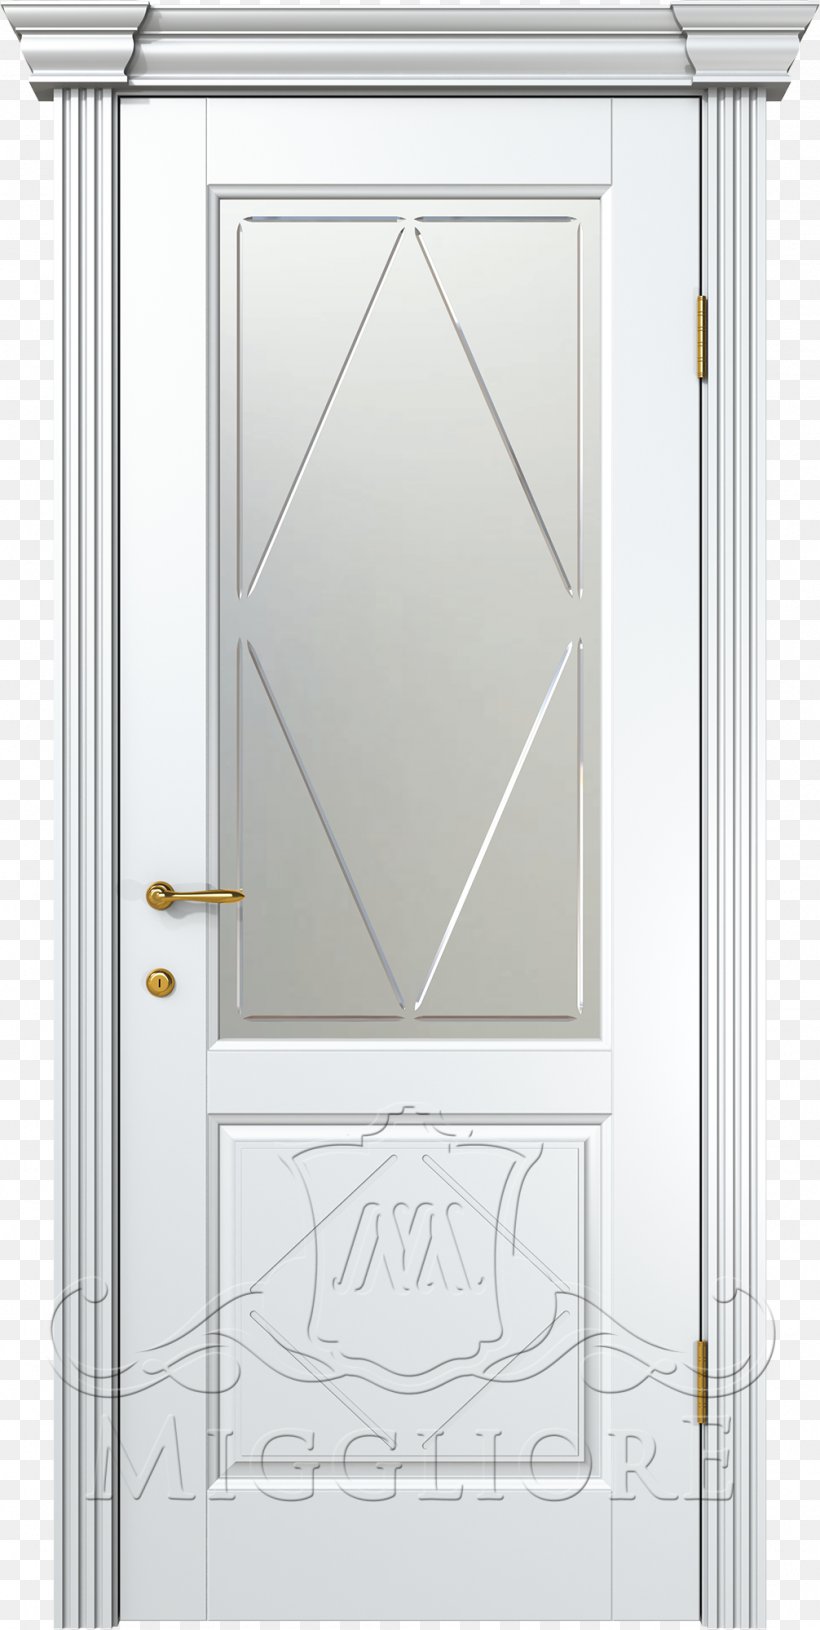 House Angle, PNG, 1006x2000px, House, Door, Home Door, Window Download Free